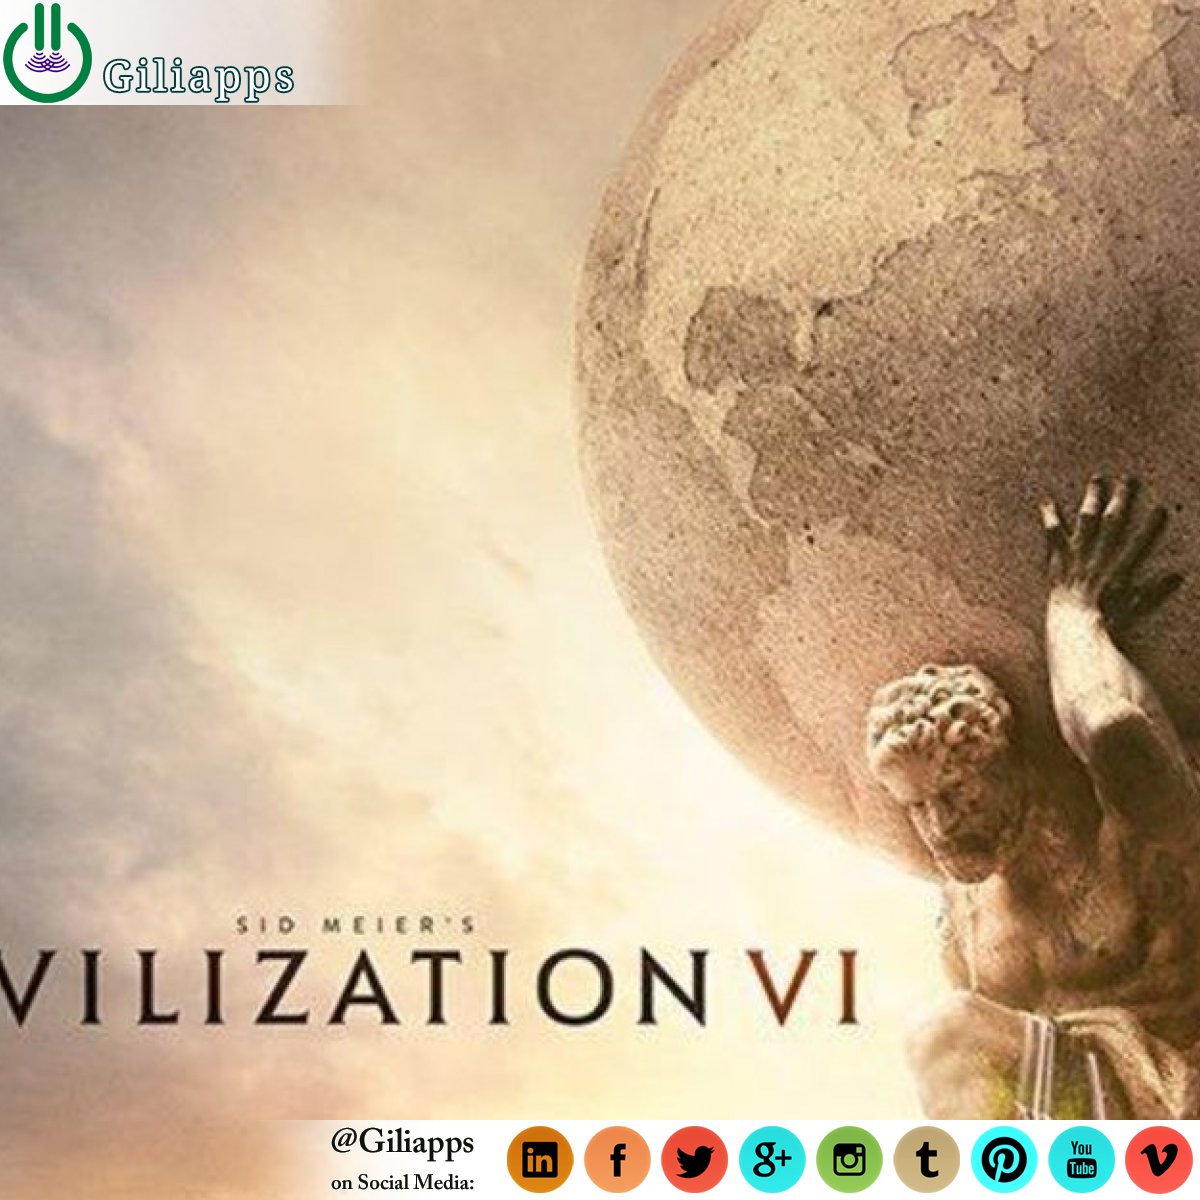 Civilization VI will release on 16 Nov 2018